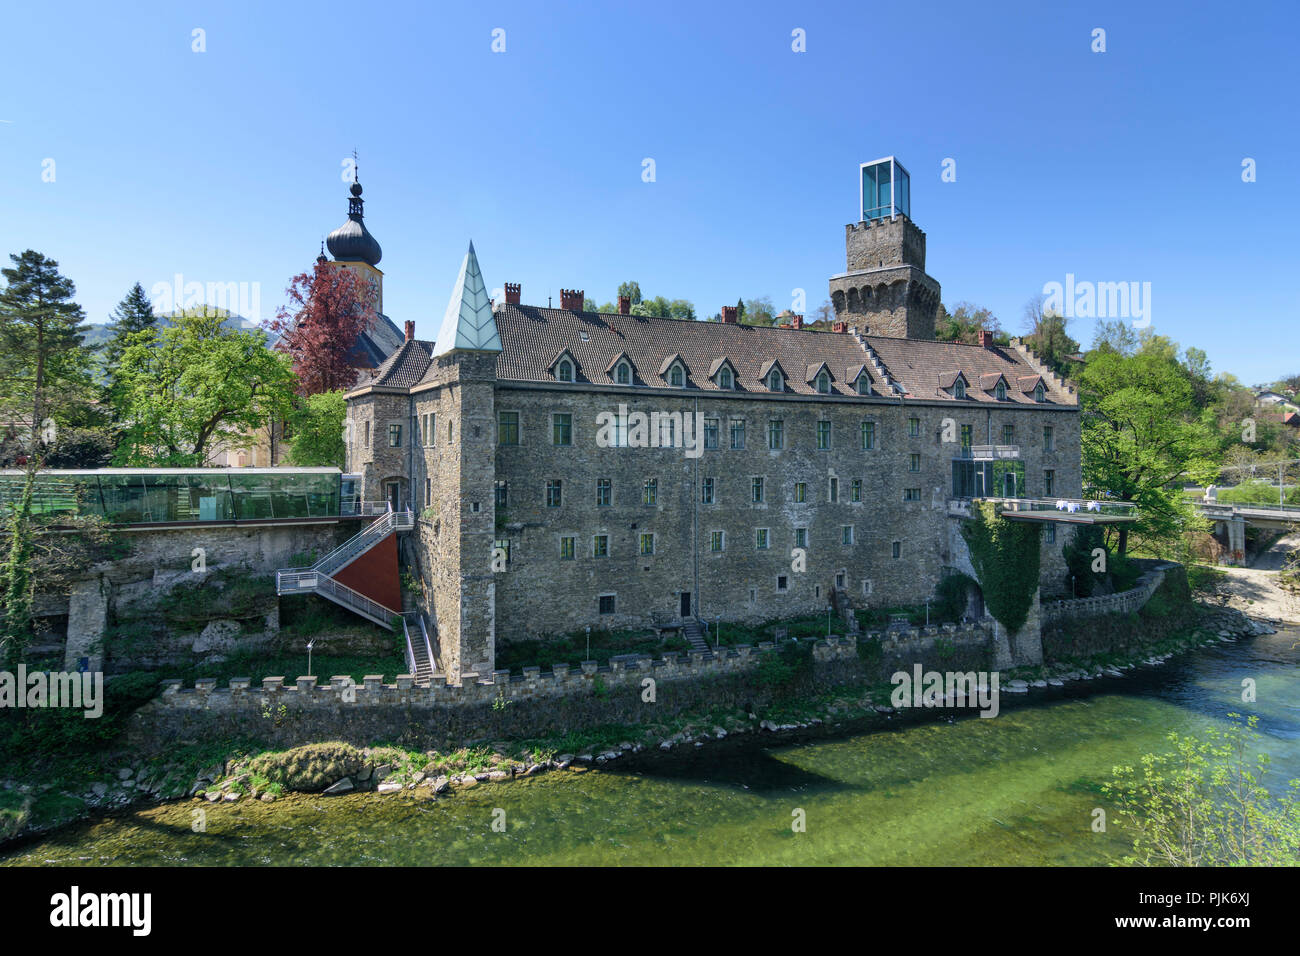 Waidhofen an der Ybbs, castle Rothschildschloss in Austria, Lower Austria (Niederösterreich), Mostviertel region Stock Photo